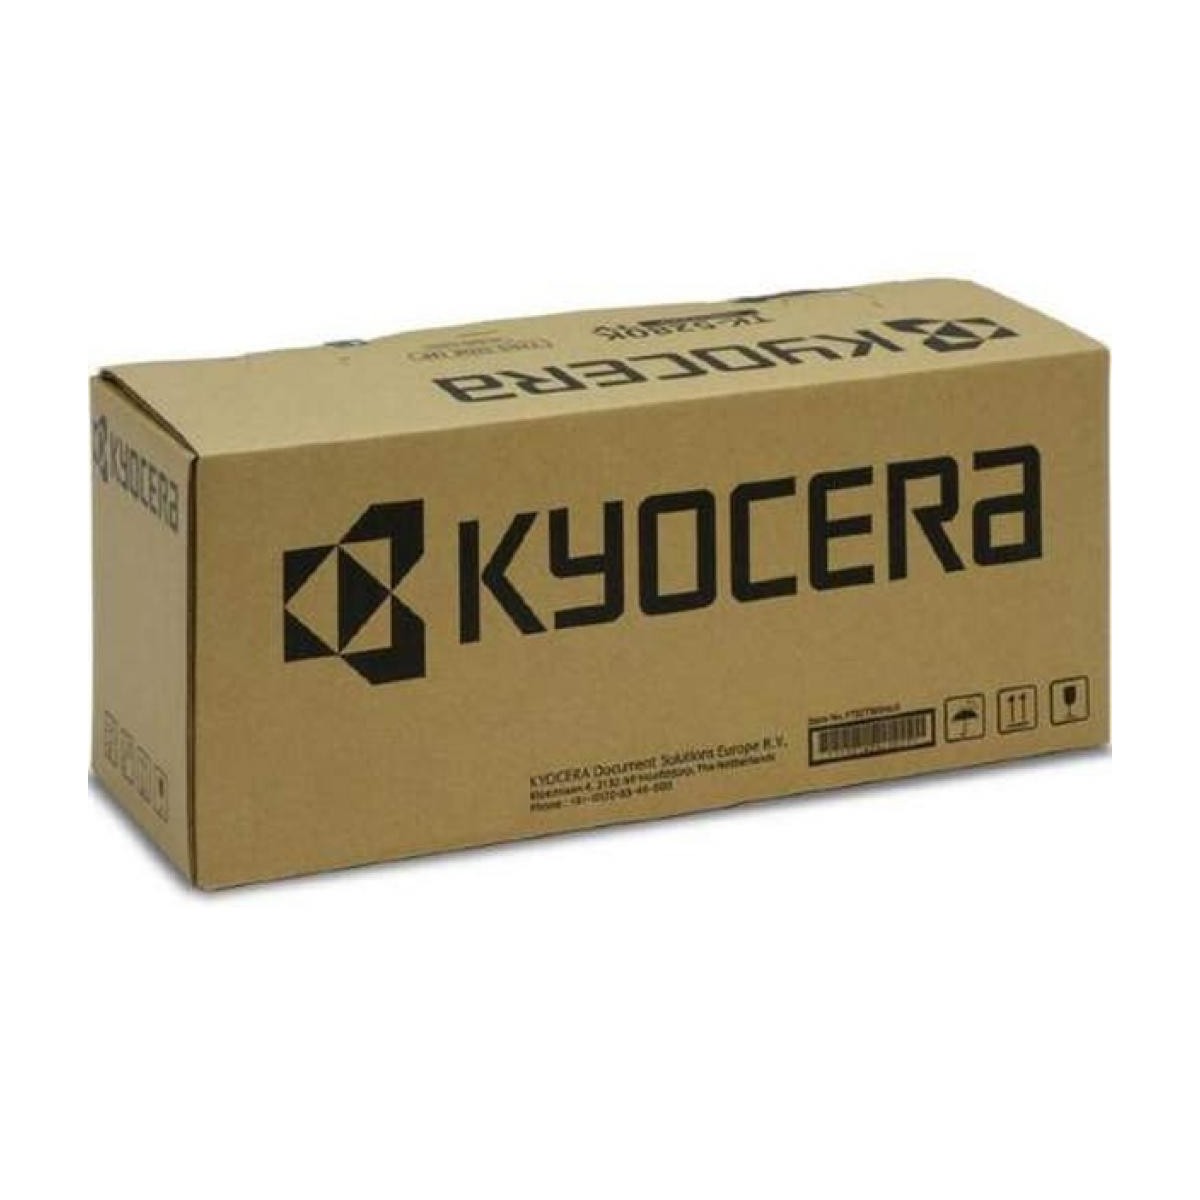 Kyocera Developer DV-8350 cyan 302L7930